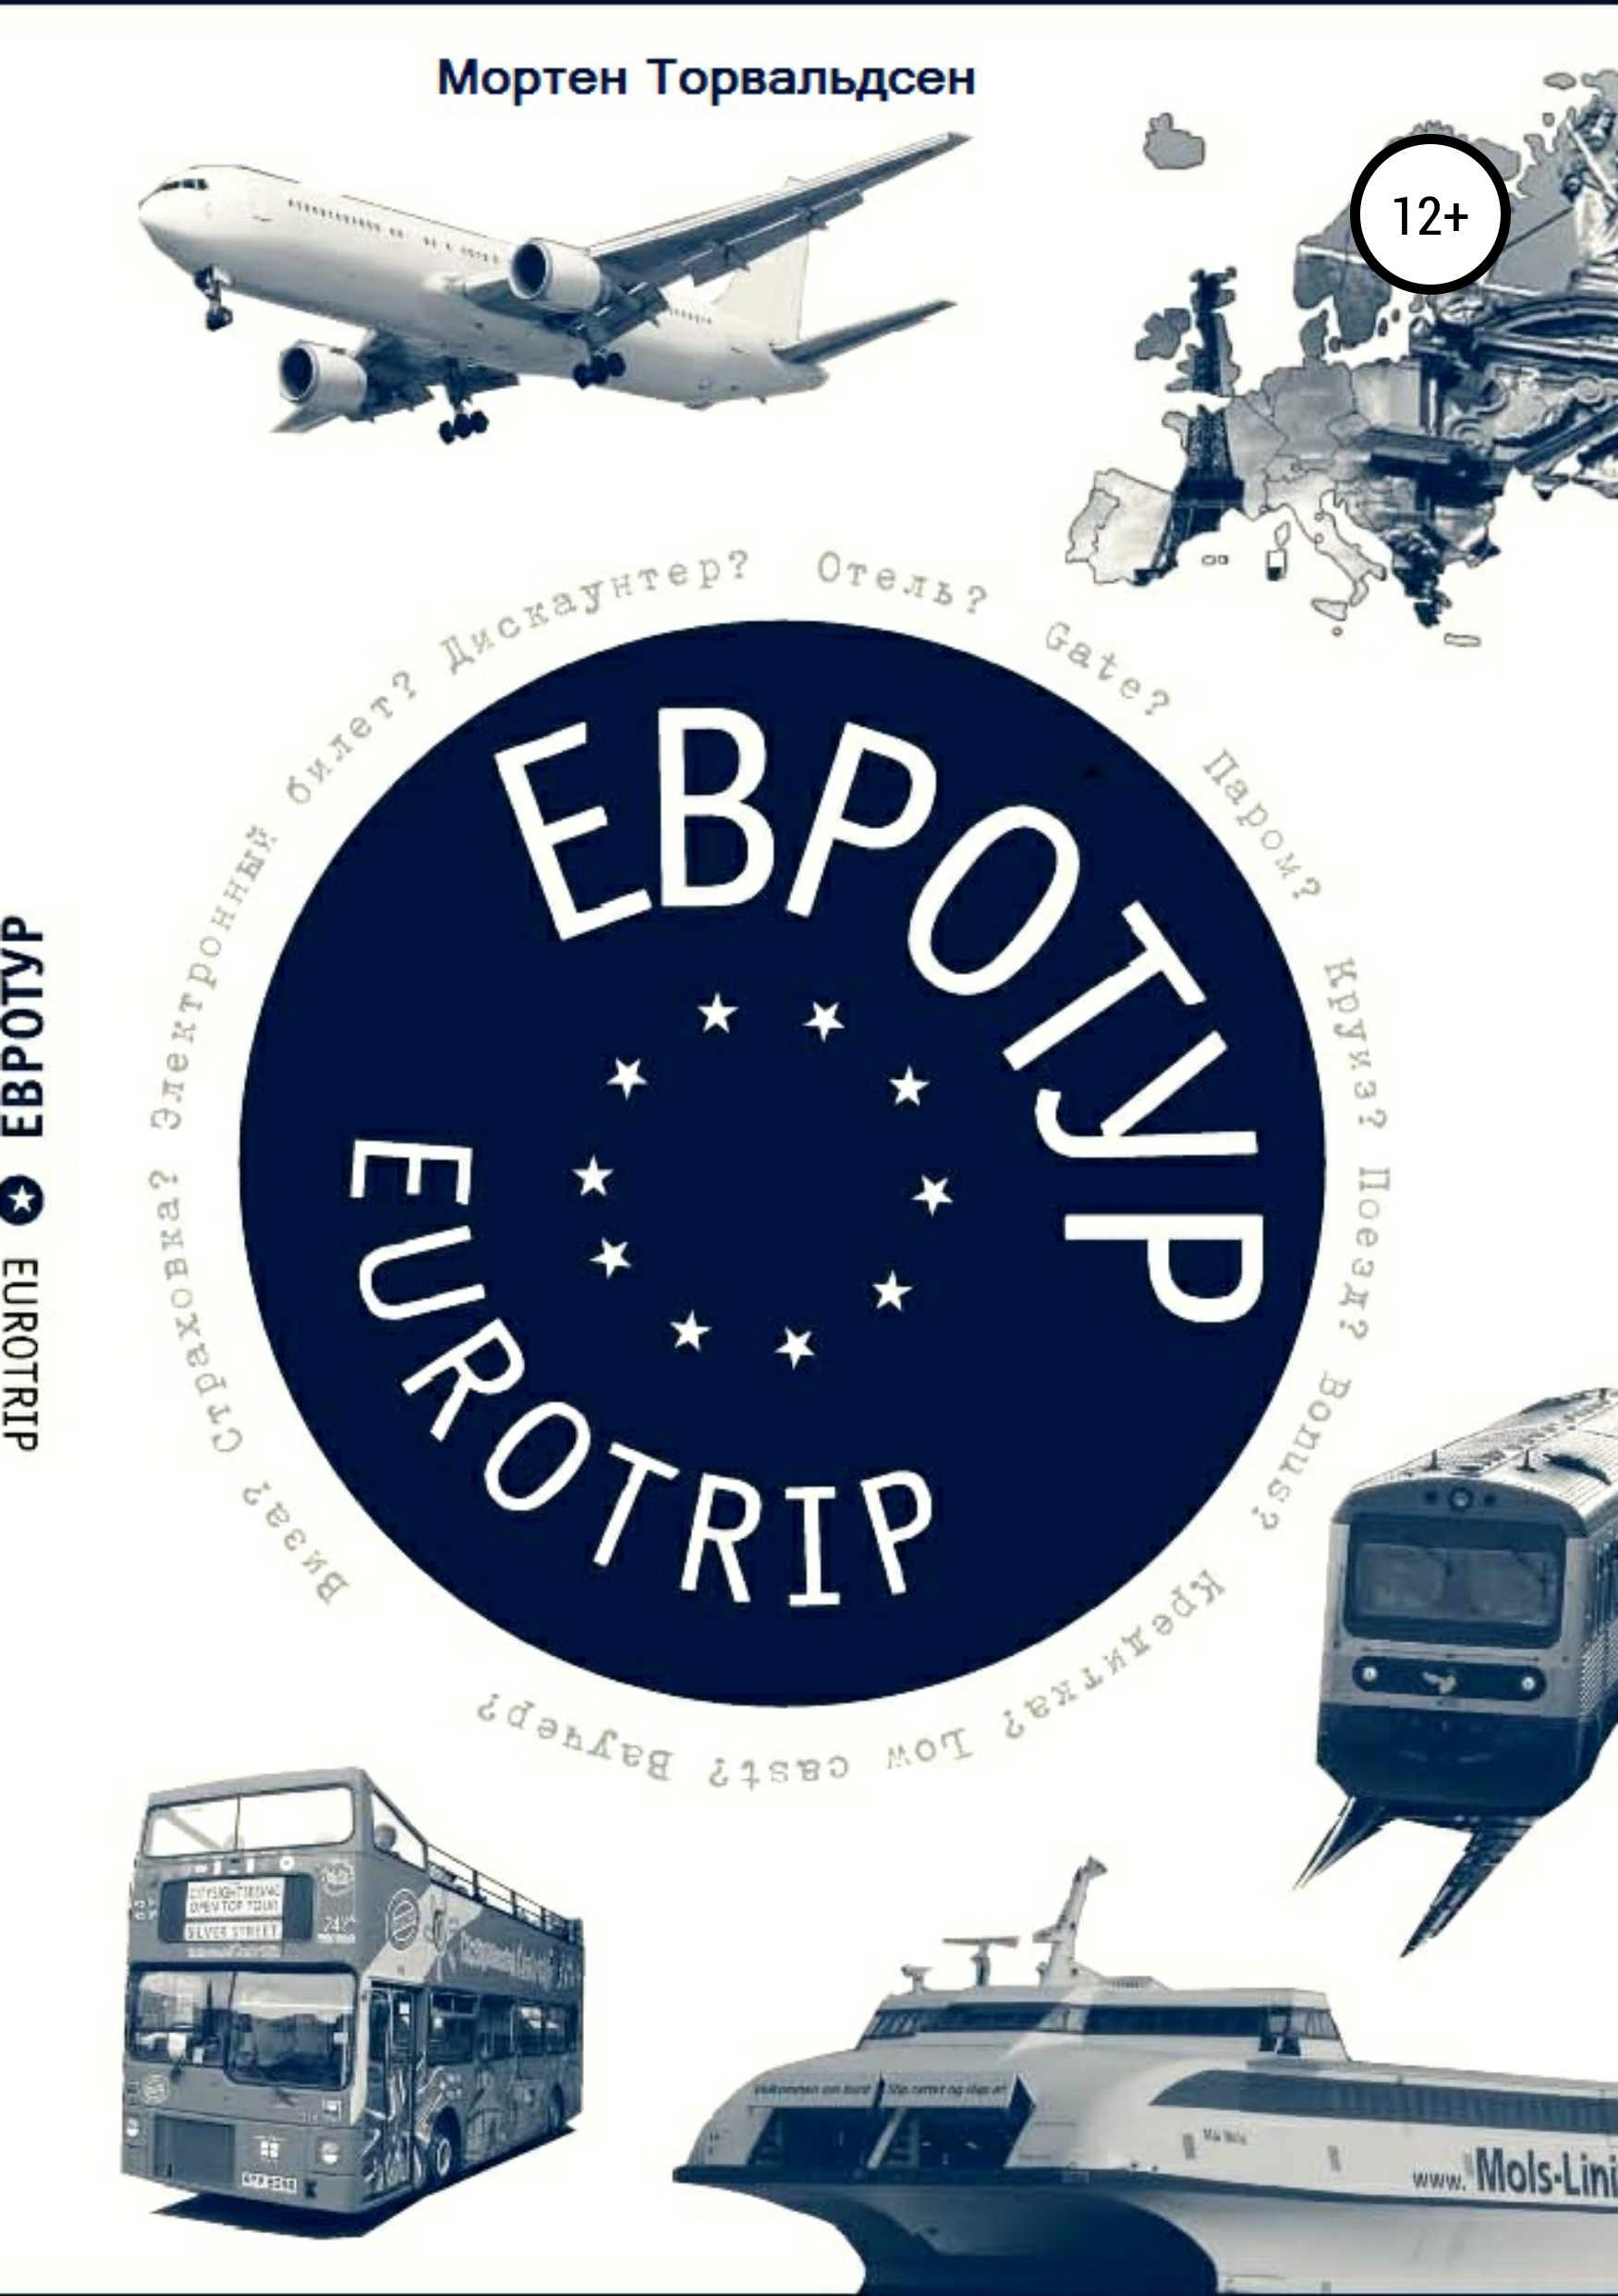 Книга Евротур-Eurotrip 2.0 из серии , созданная  Mортен Торвальдсен, может относится к жанру Хобби, Ремесла. Стоимость электронной книги Евротур-Eurotrip 2.0 с идентификатором 42341846 составляет 119.00 руб.